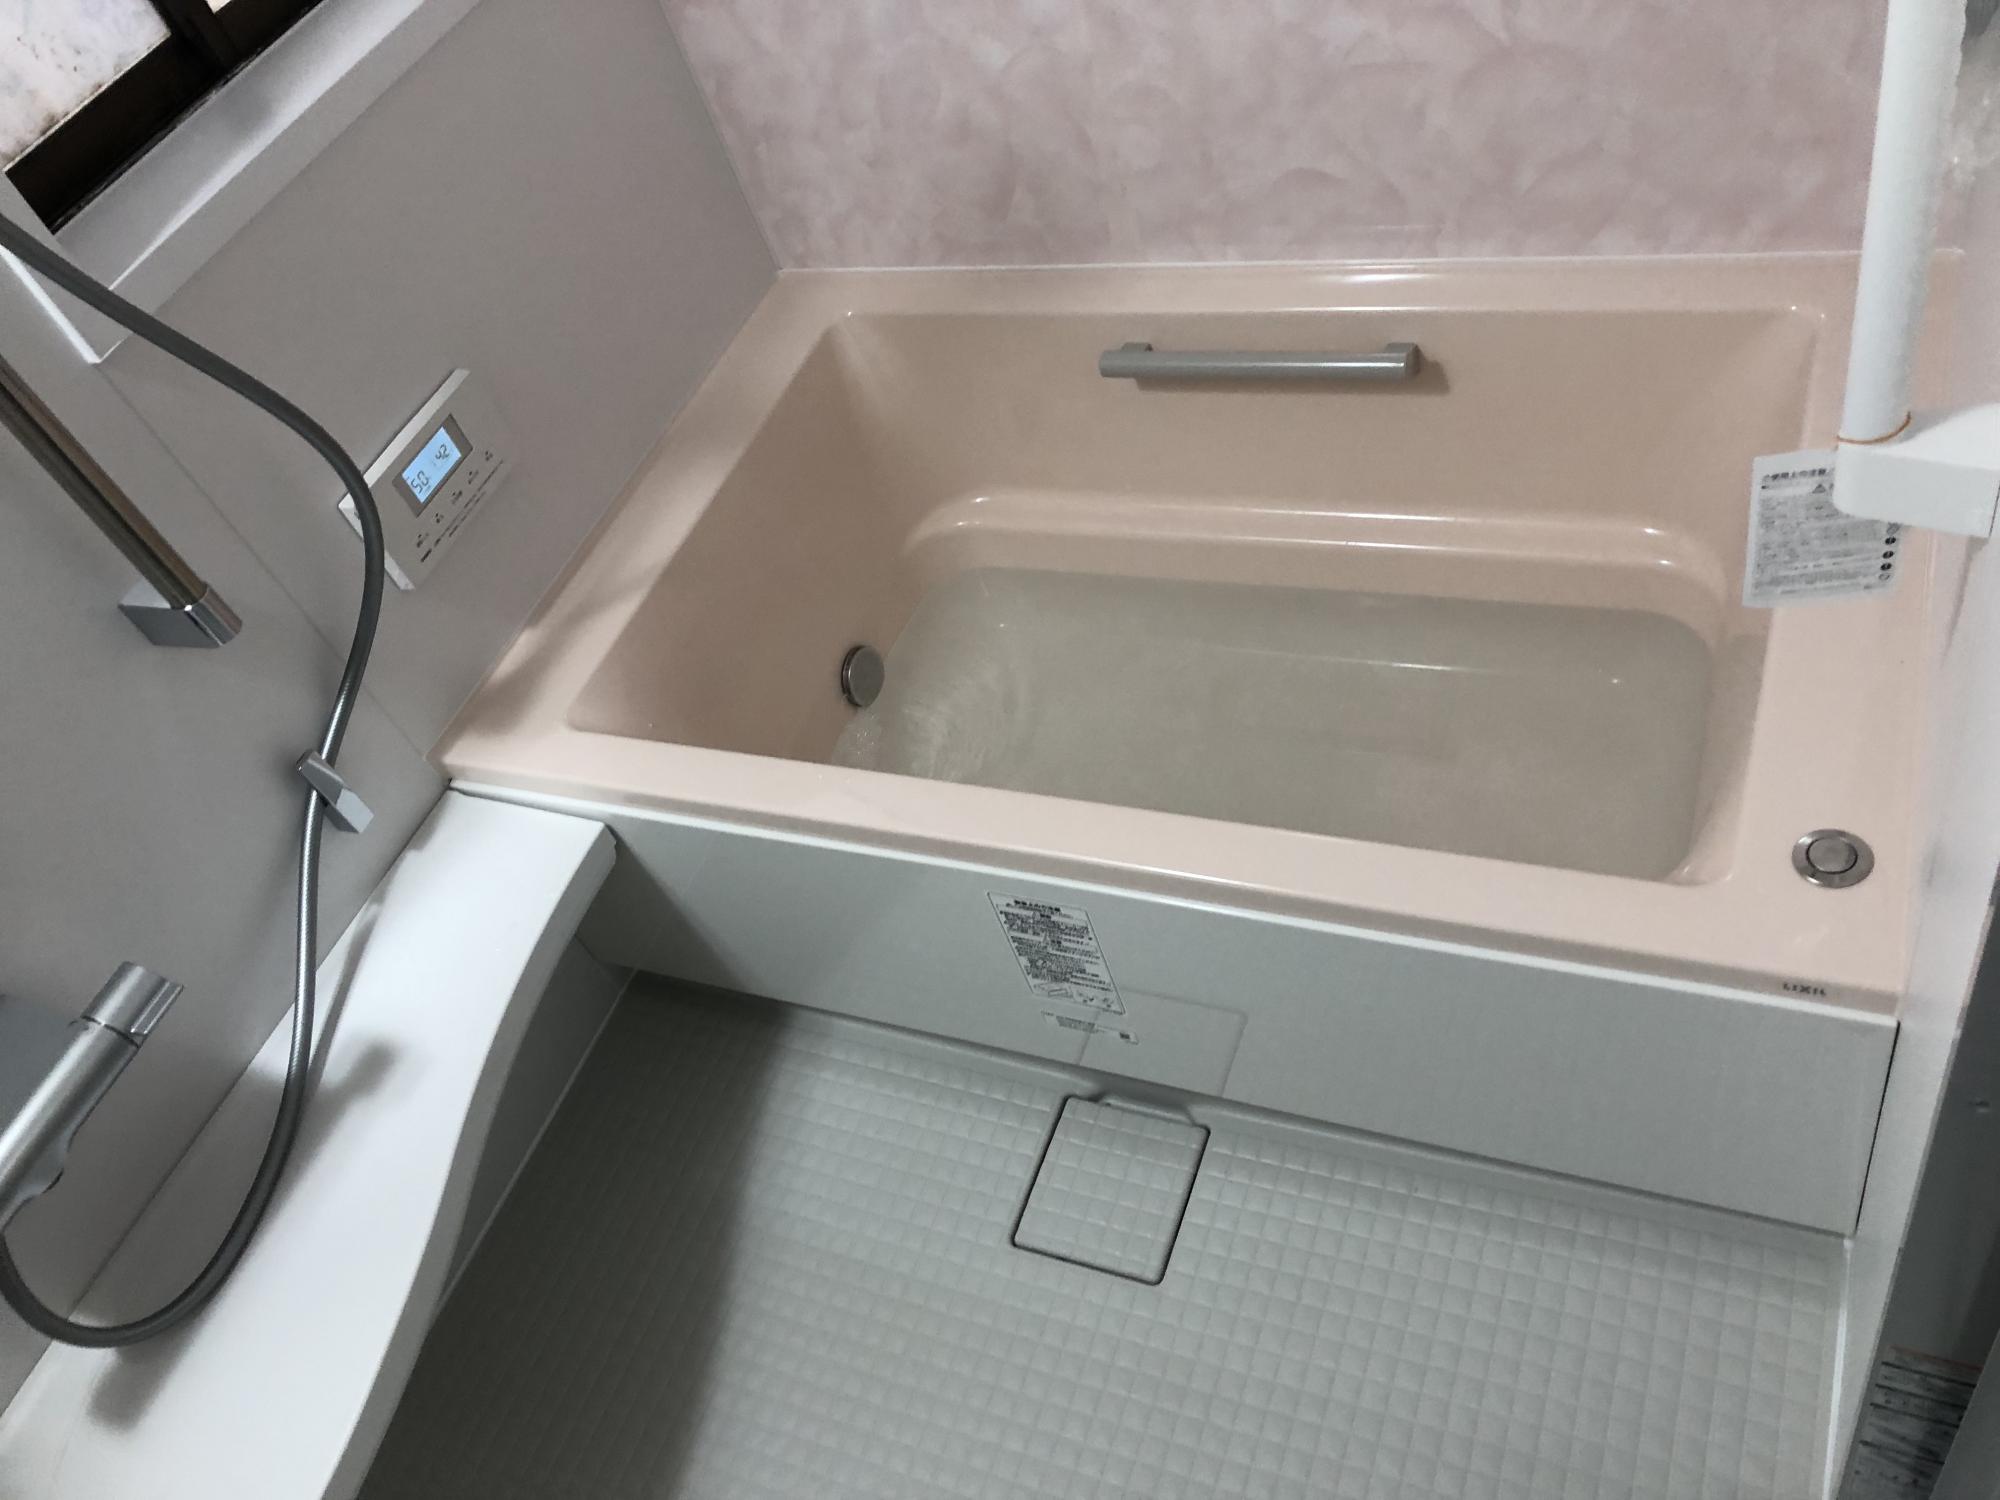 シロアリ被害をきっかけに安心できる暖かなお風呂に。